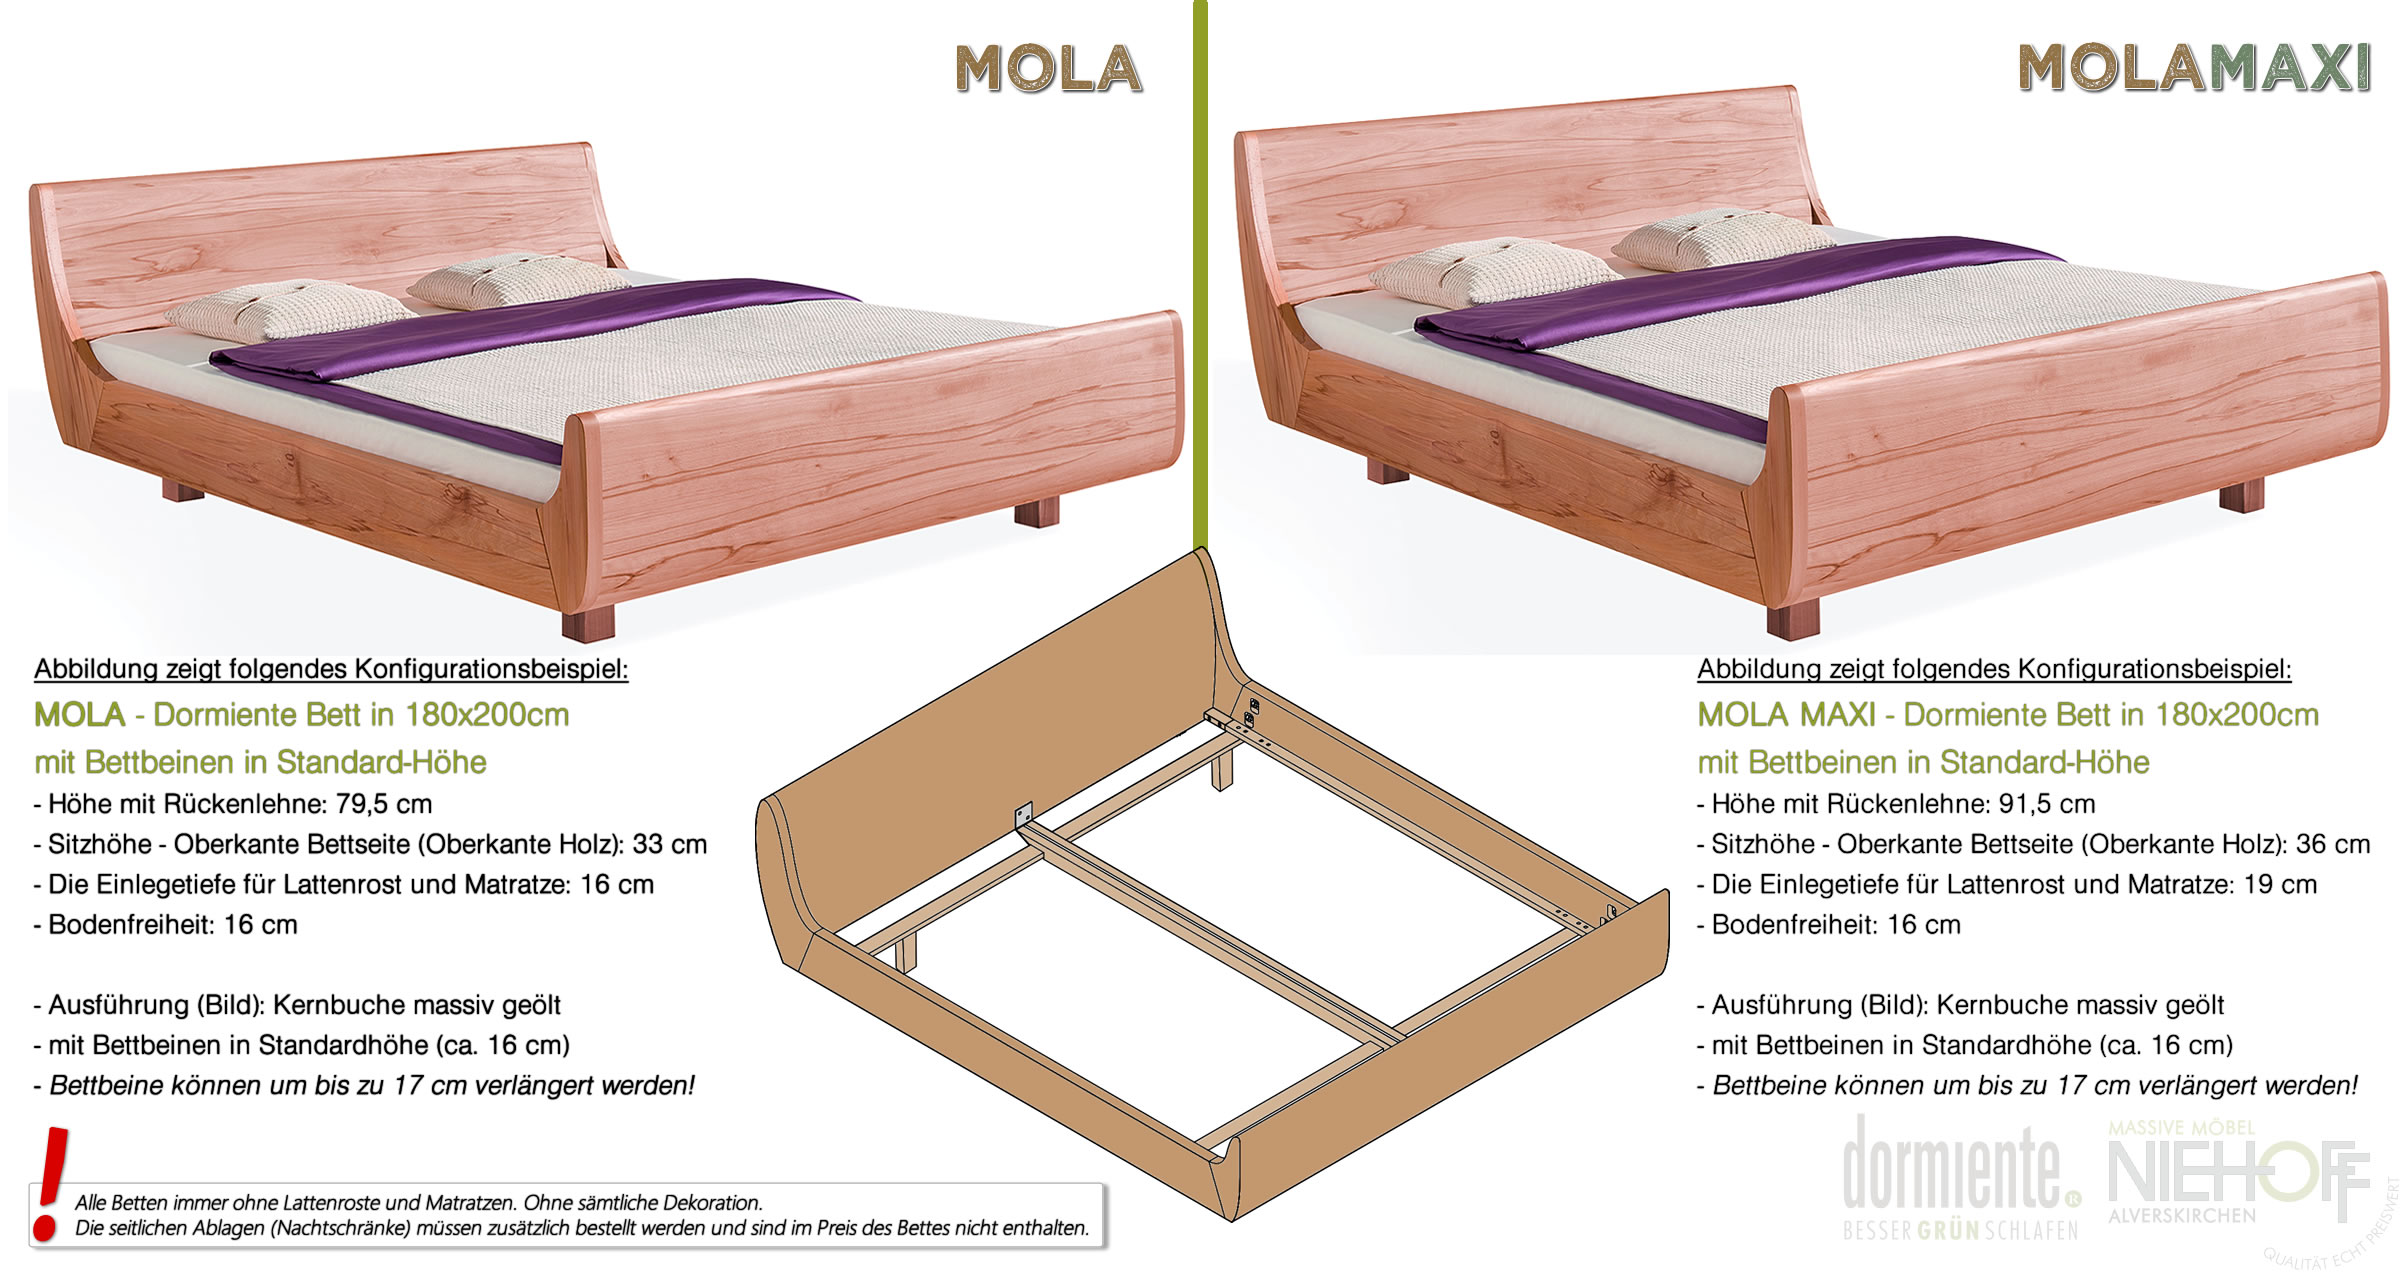 Unterschiede zwischen den Massivholzbetten Mola und Mola Maxi